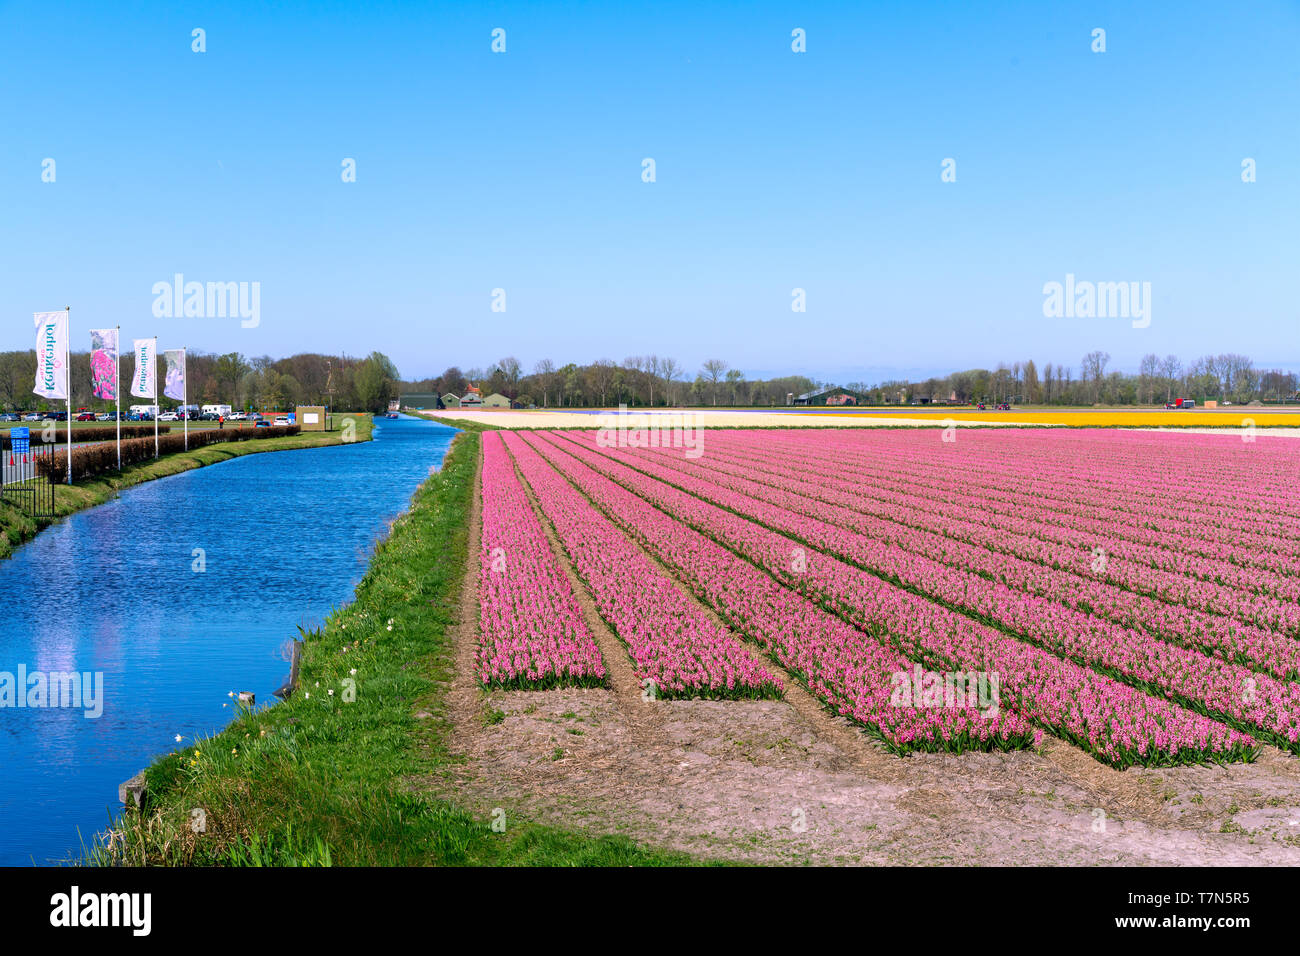 Blumenwiesen von bunten Hyazinthen entlang des Kanals im nördlichen Teil Hollands, in der Stockfoto